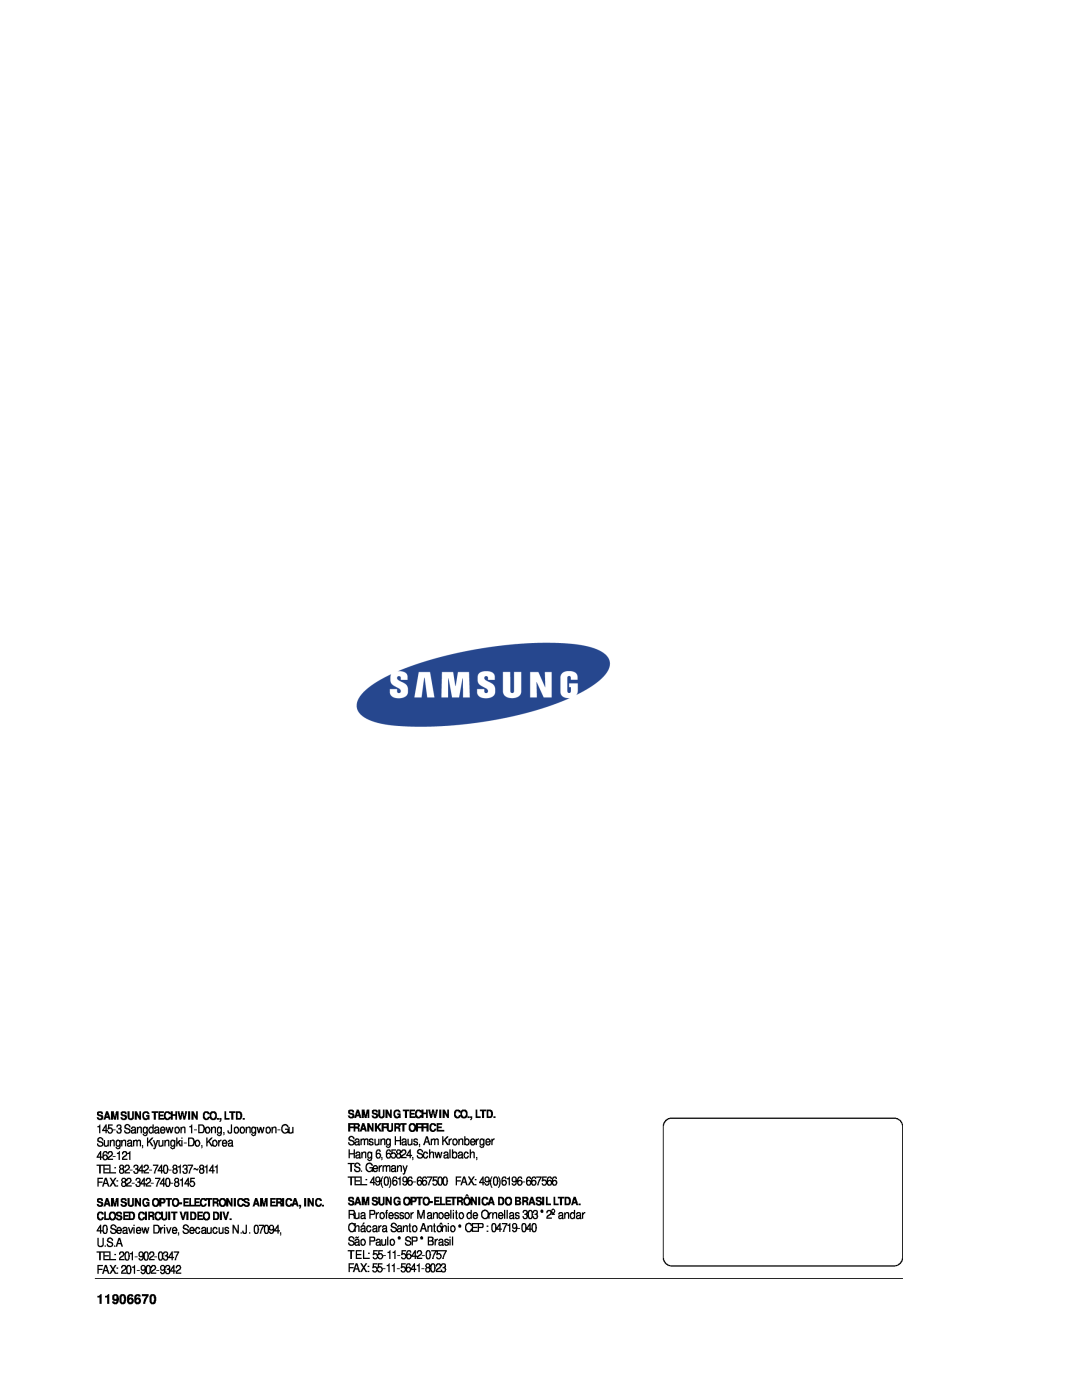 Samsung SAM-14MV manual TEL 82-342-740-8137~8141 FAX, Seaview Drive, Secaucus N.J. 07094, U.S.A TEL FAX, Frankfurt Office 